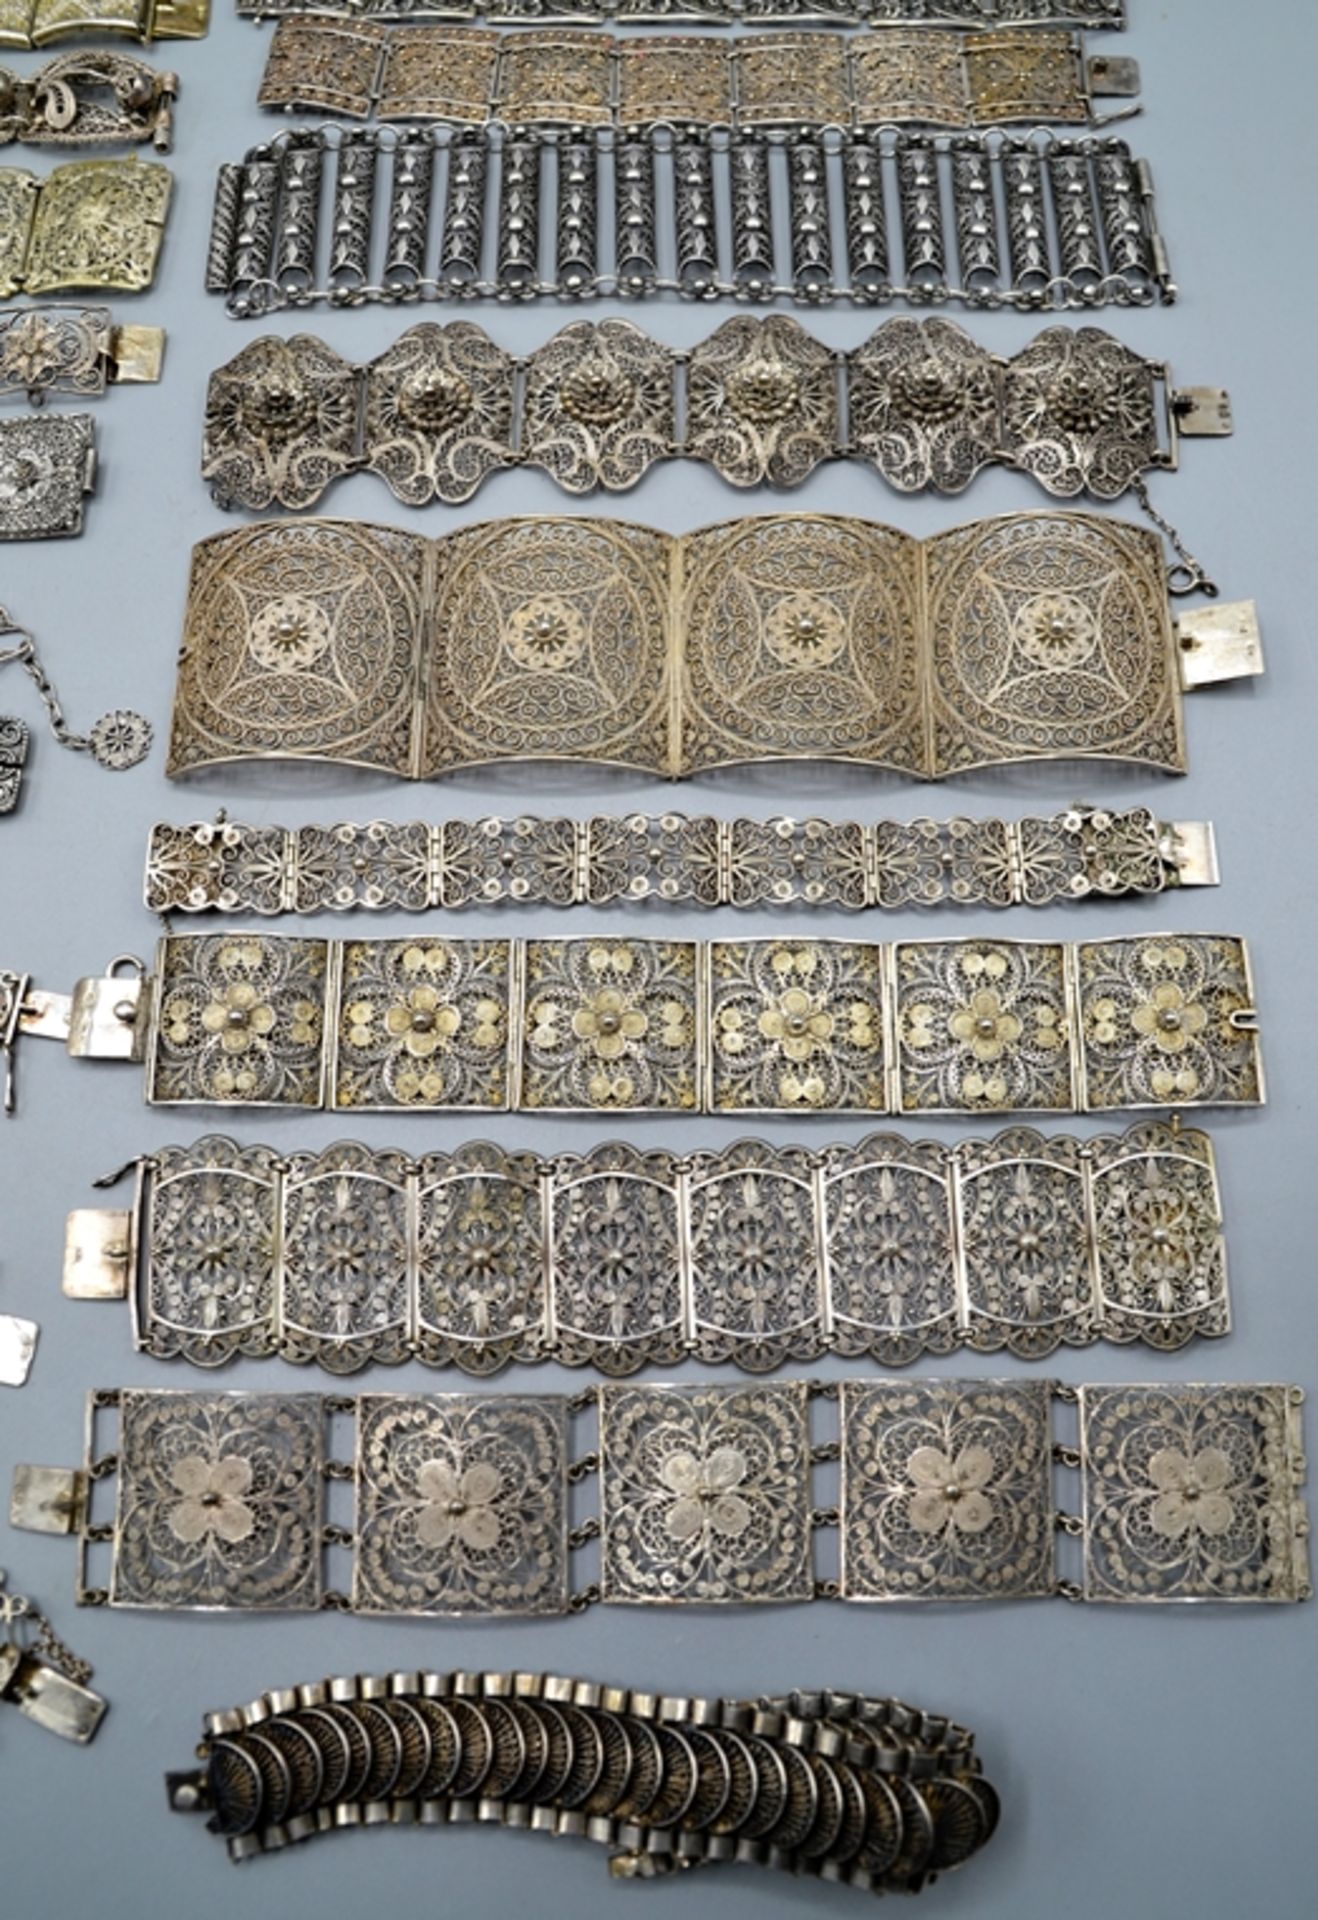 Armbänder filigran Silberdraht Silberschmuck Trachtenschmuck überw. Silber ca. 29 St., der große Te - Bild 4 aus 5